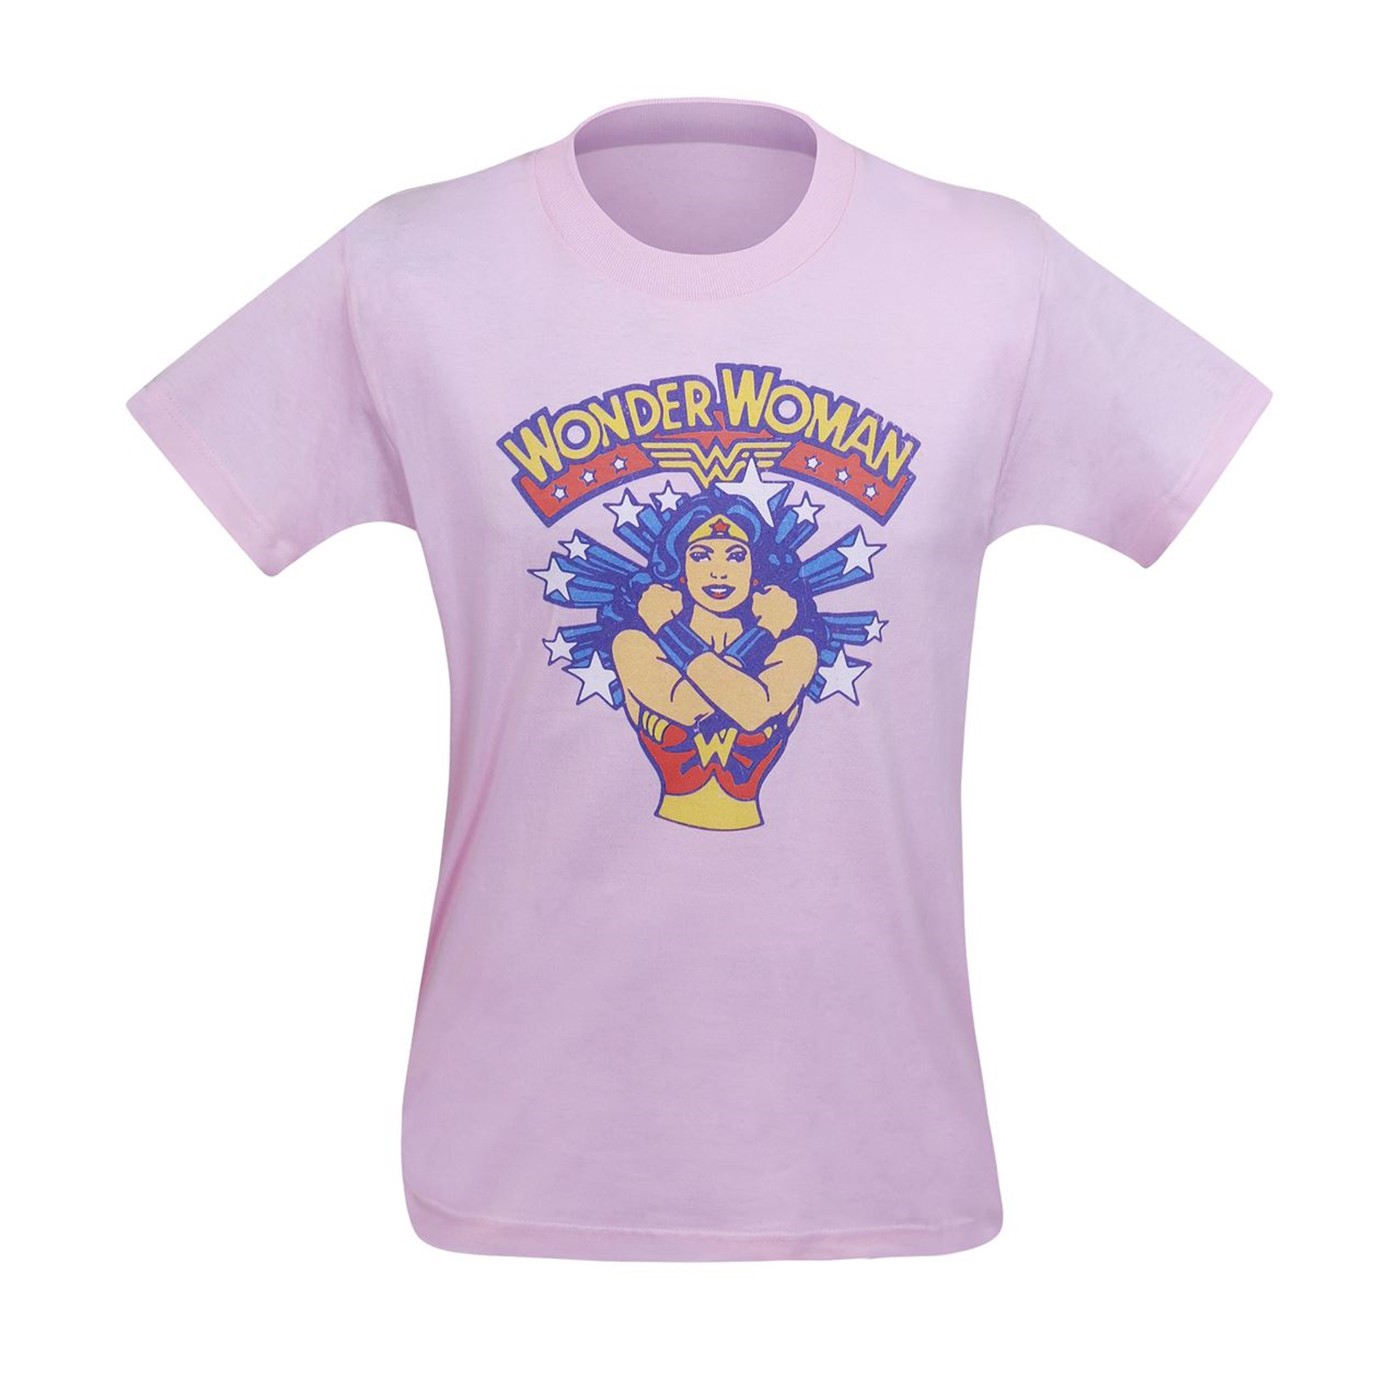 Wonder Woman Superstar Kids T-Shirt